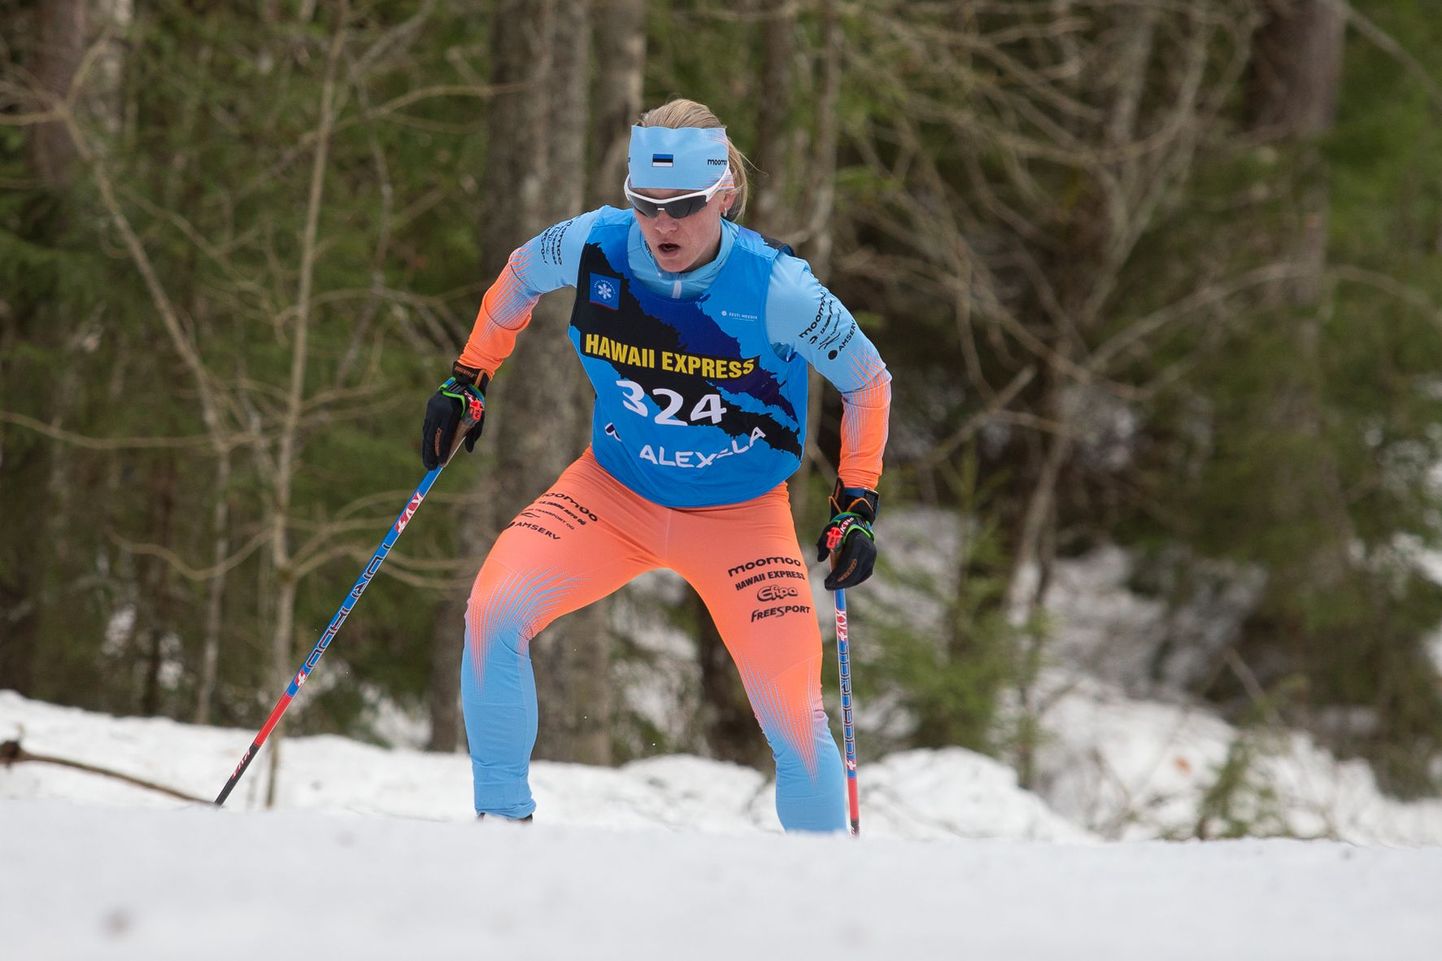 Этой зимой Татьяна Маннима доказала, что даже тренируясь на любительском уровне она способна составить серьезную конкуренцию лучшим в мире лыжникам-стайерам.